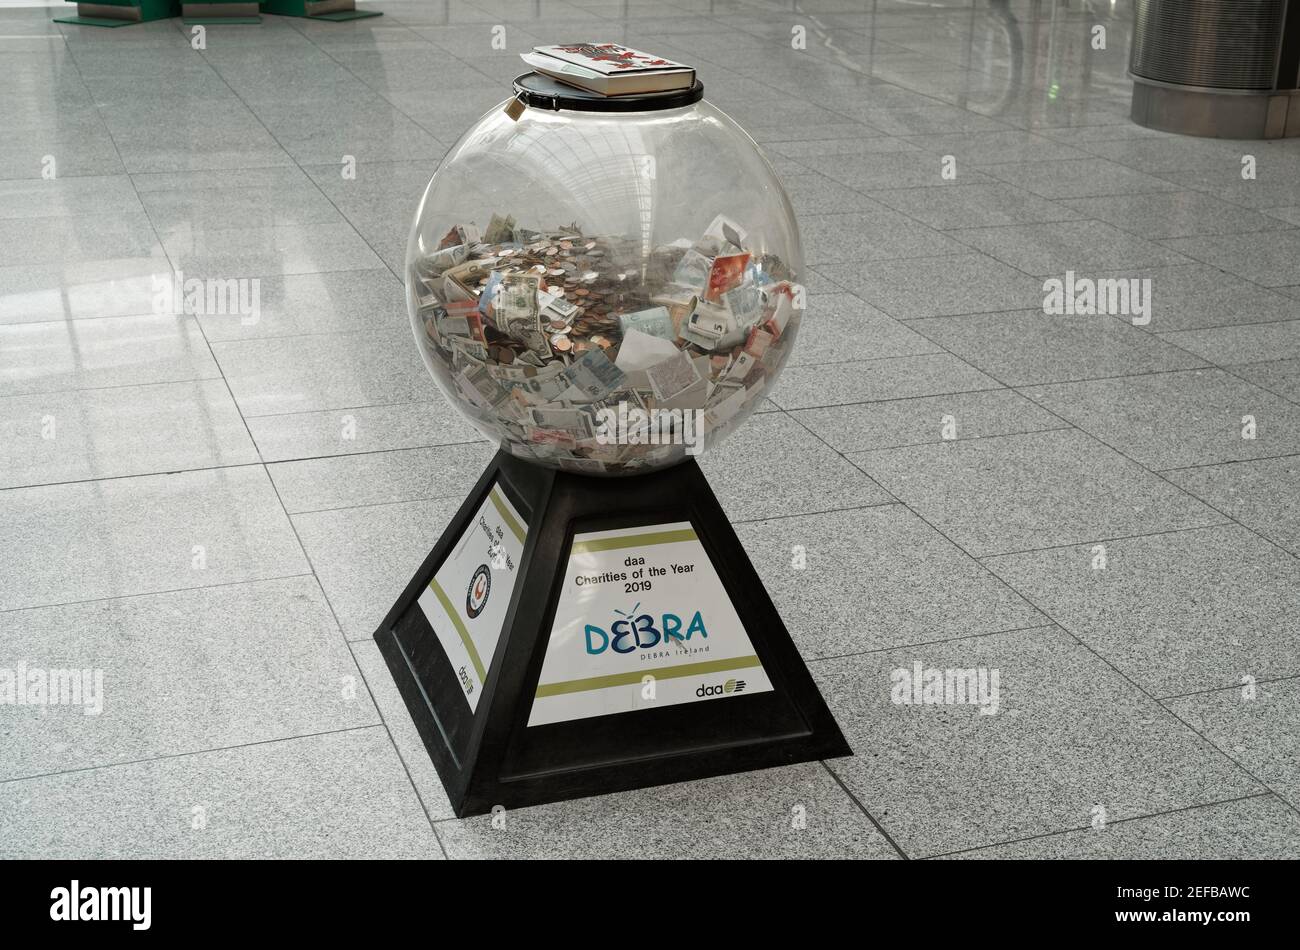 DUBLIN, IRLANDE - 15 janvier 2020 : vue sur un contenant en verre en forme de balle avec de l'argent collecté pour la charité 'DEBRA Ireland' dans le hall vide de Dublin Air Banque D'Images